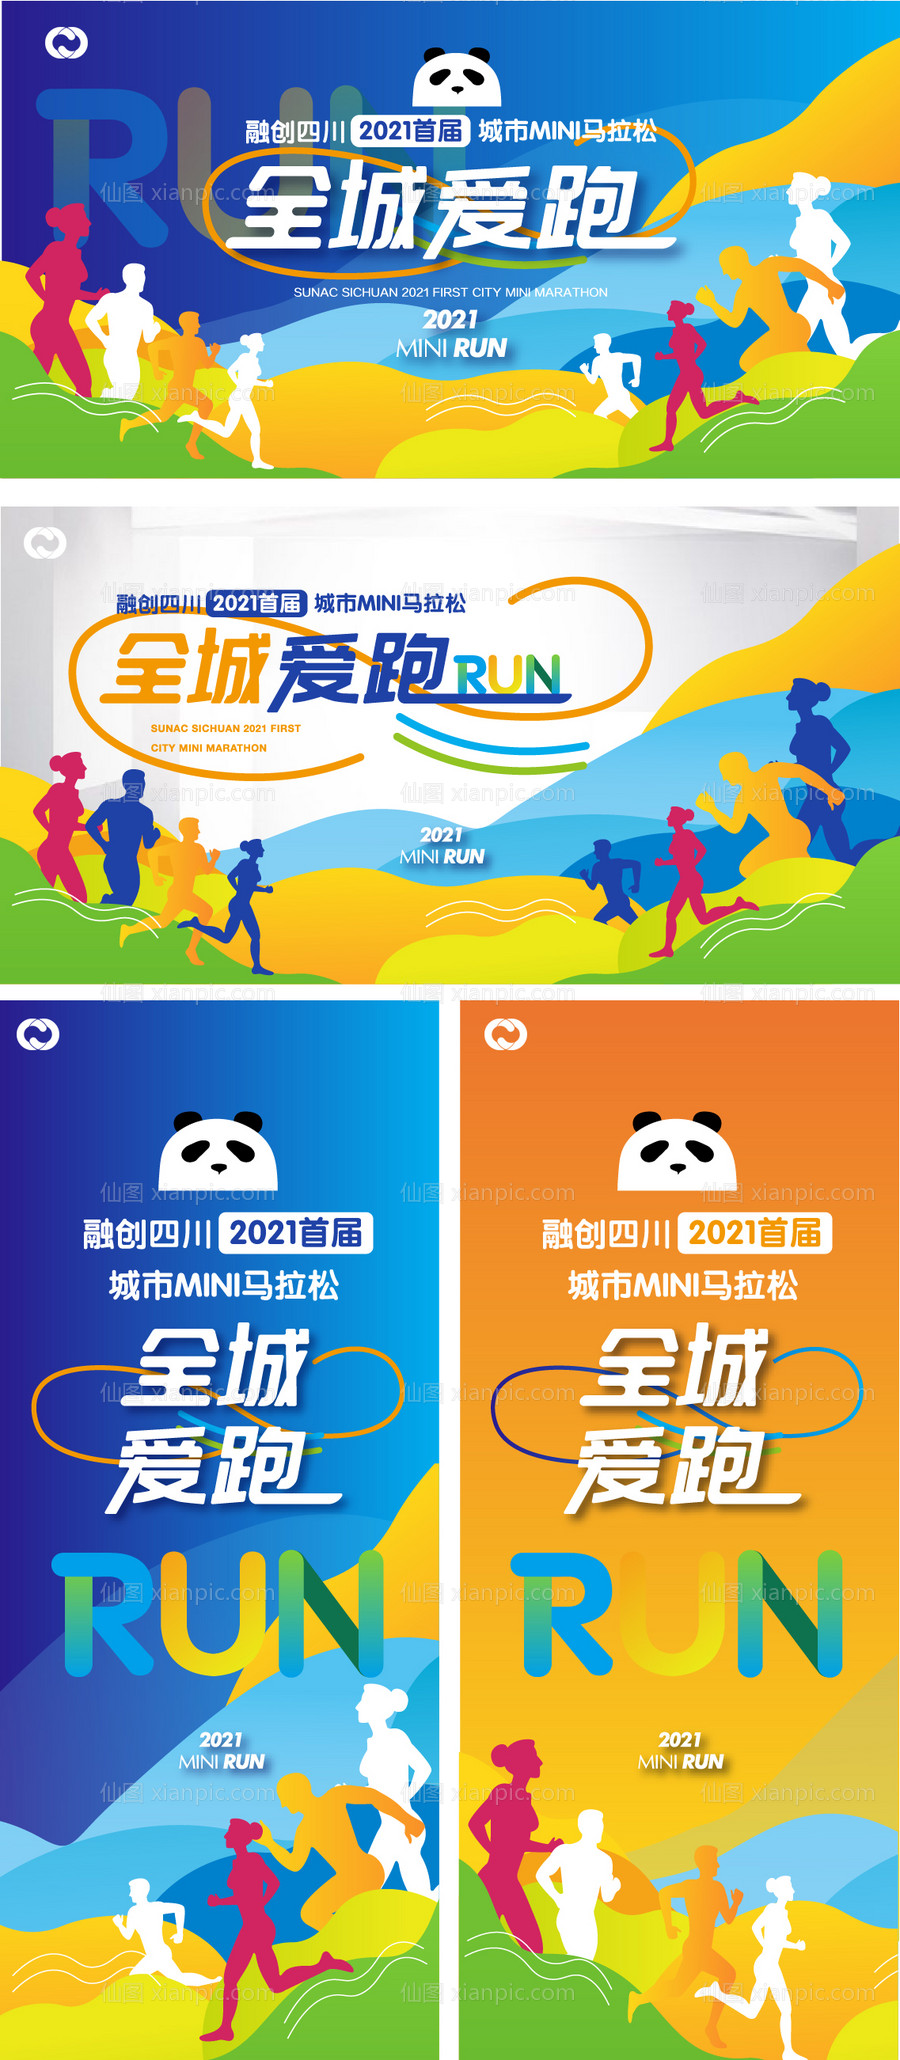 素材乐-跑步活动酷跑周末活动海报公益大赛郑州